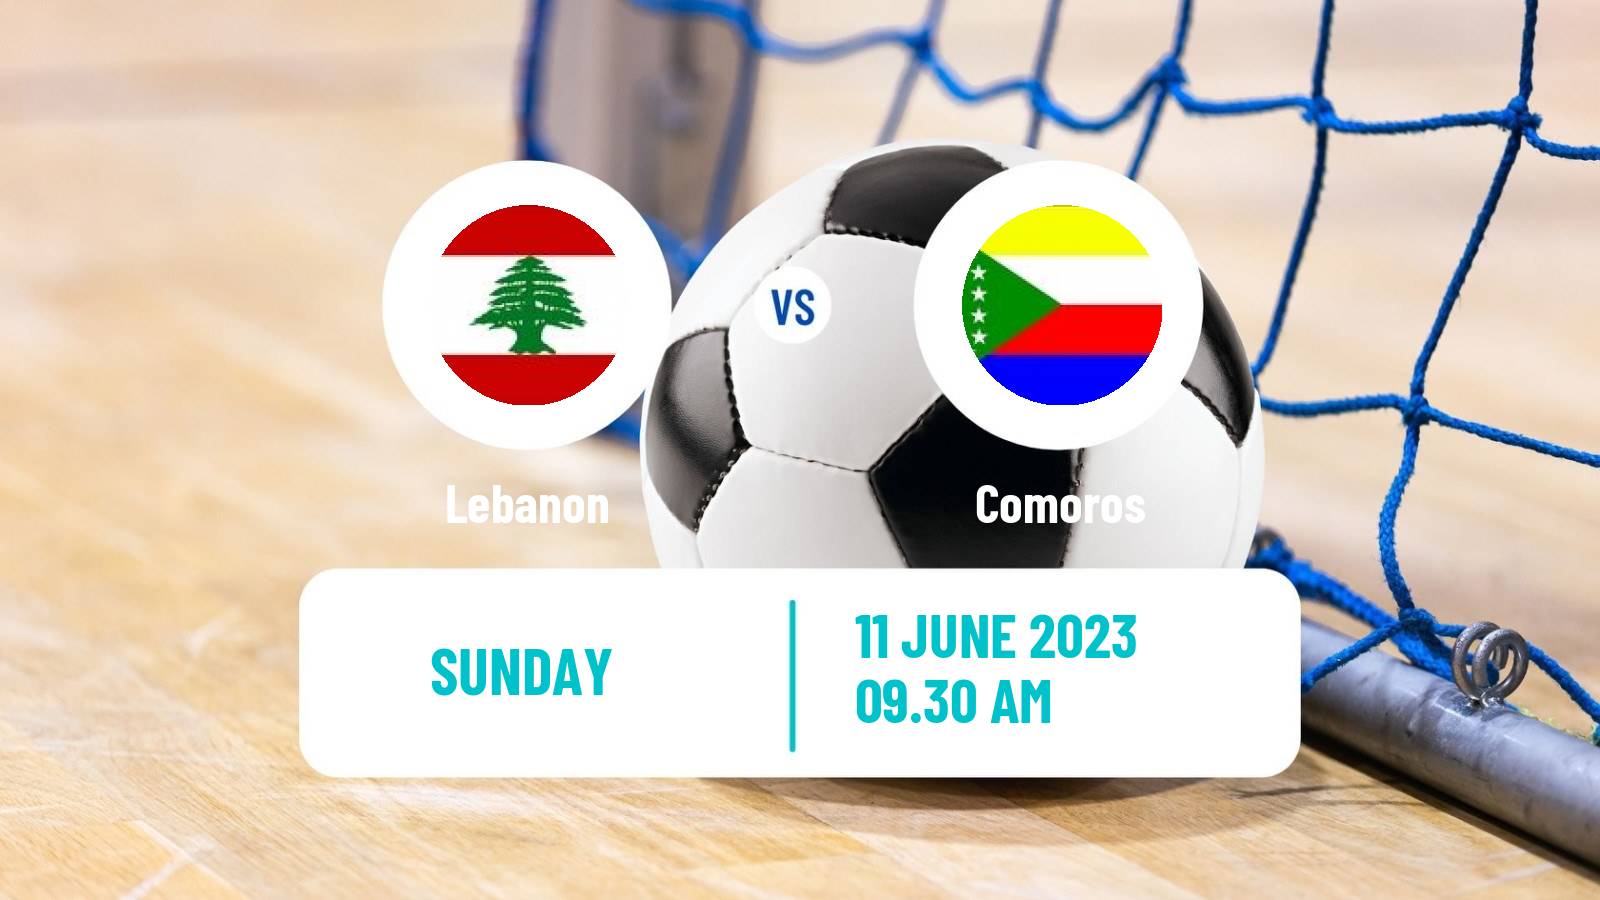 Futsal Arab Futsal Cup Lebanon - Comoros